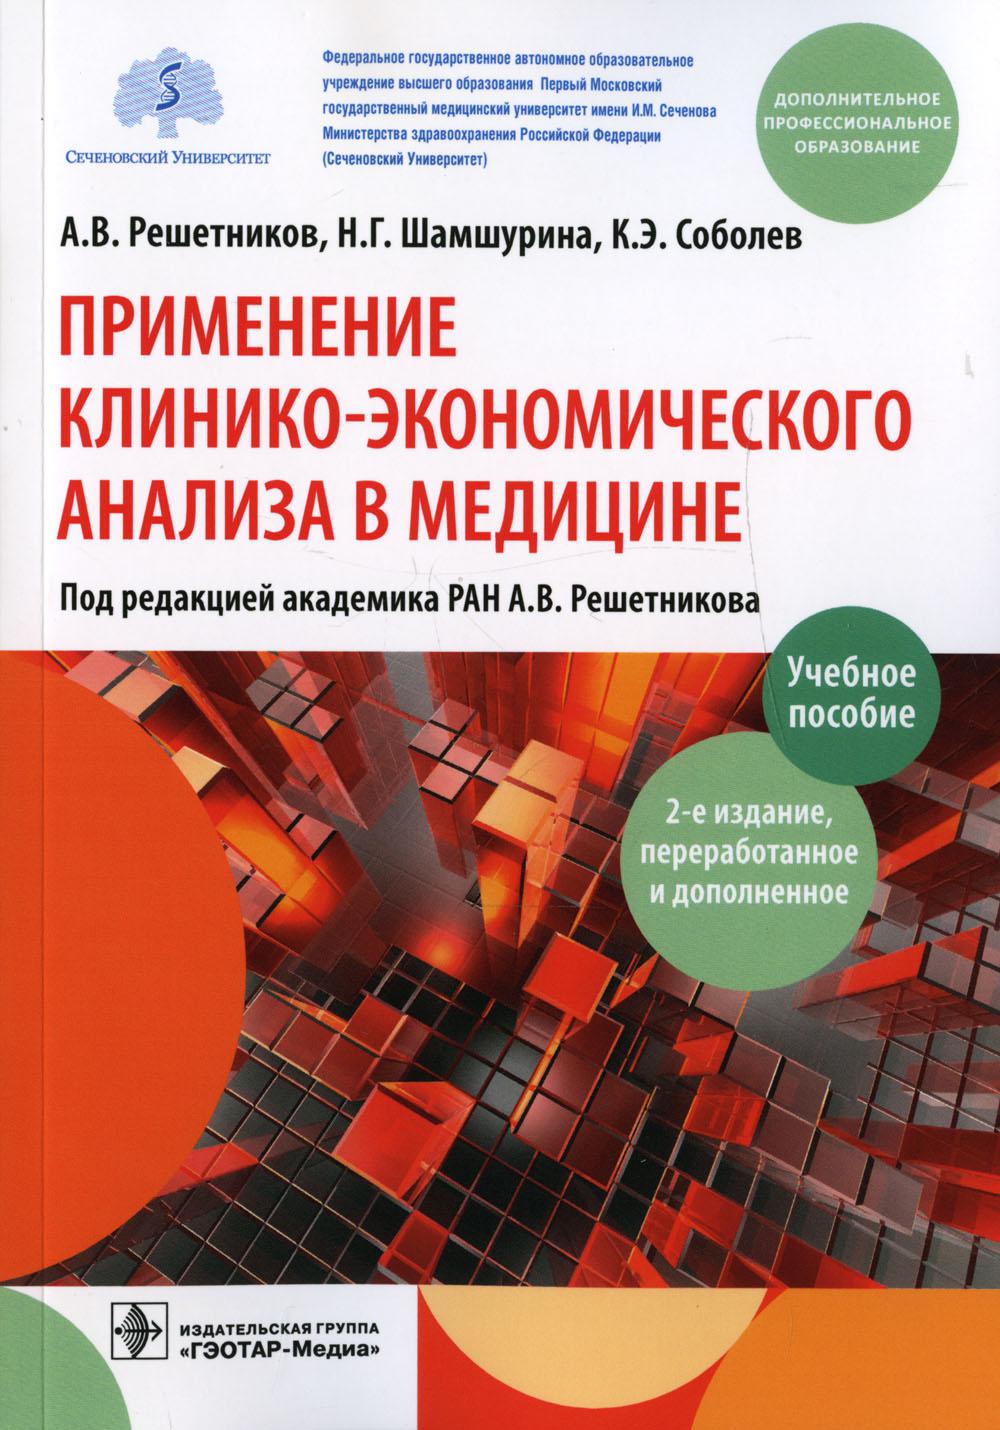 Применение клинико-экономического анализа в медицине: Учебное пособие. 2-е изд., перераб. и доп